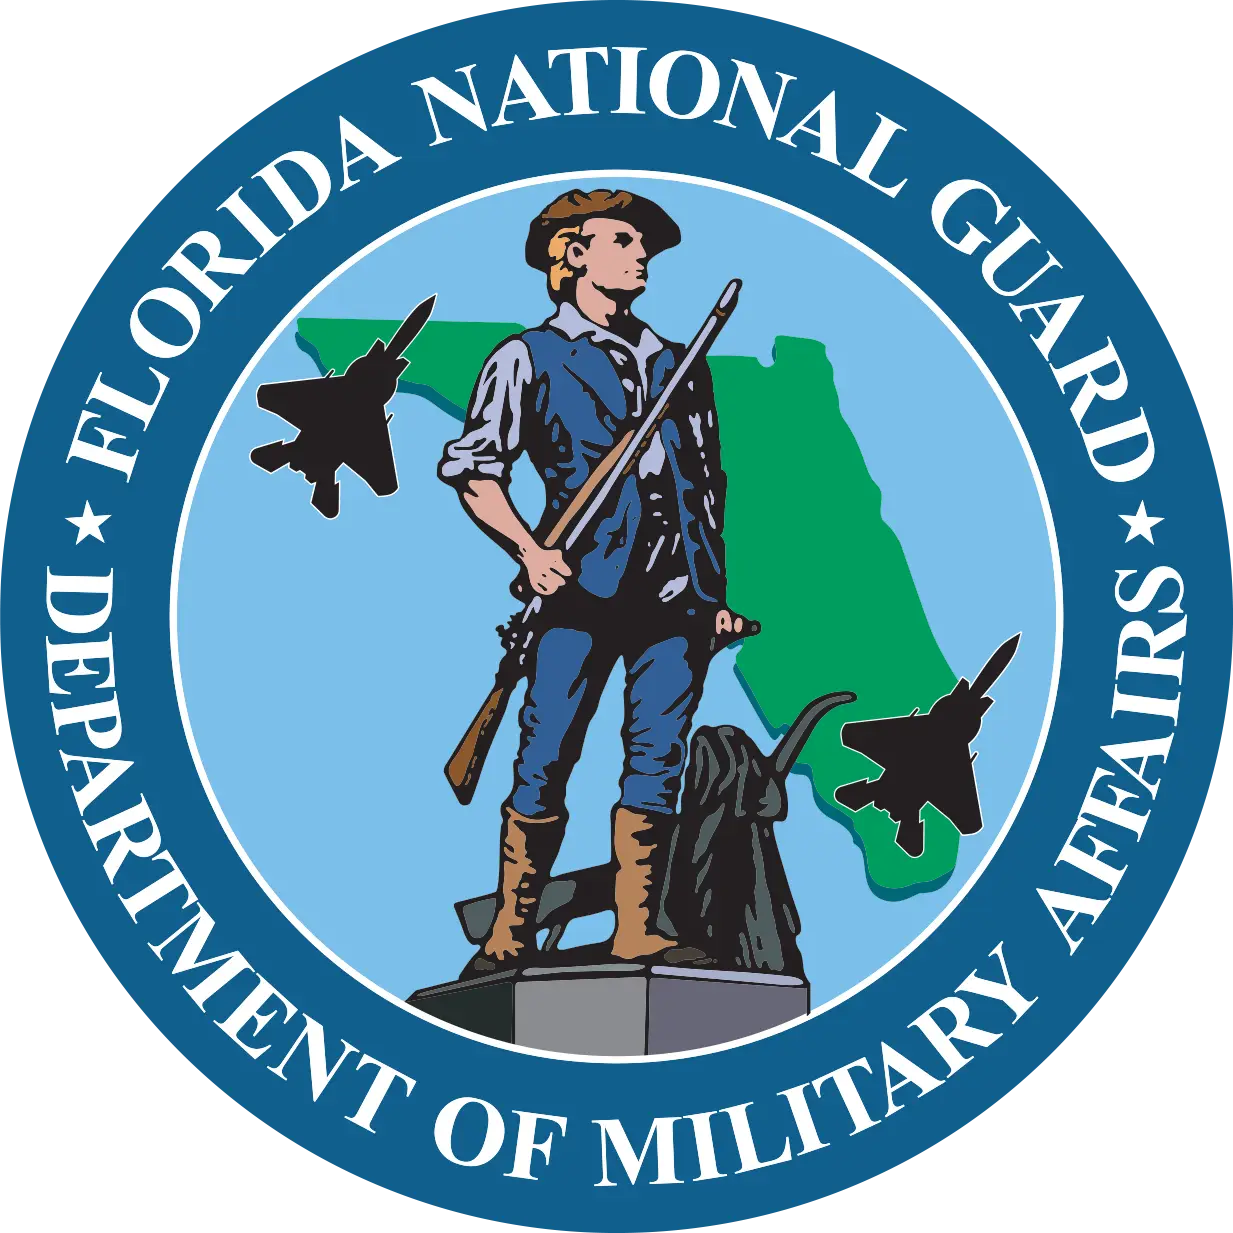 Florida National Guard